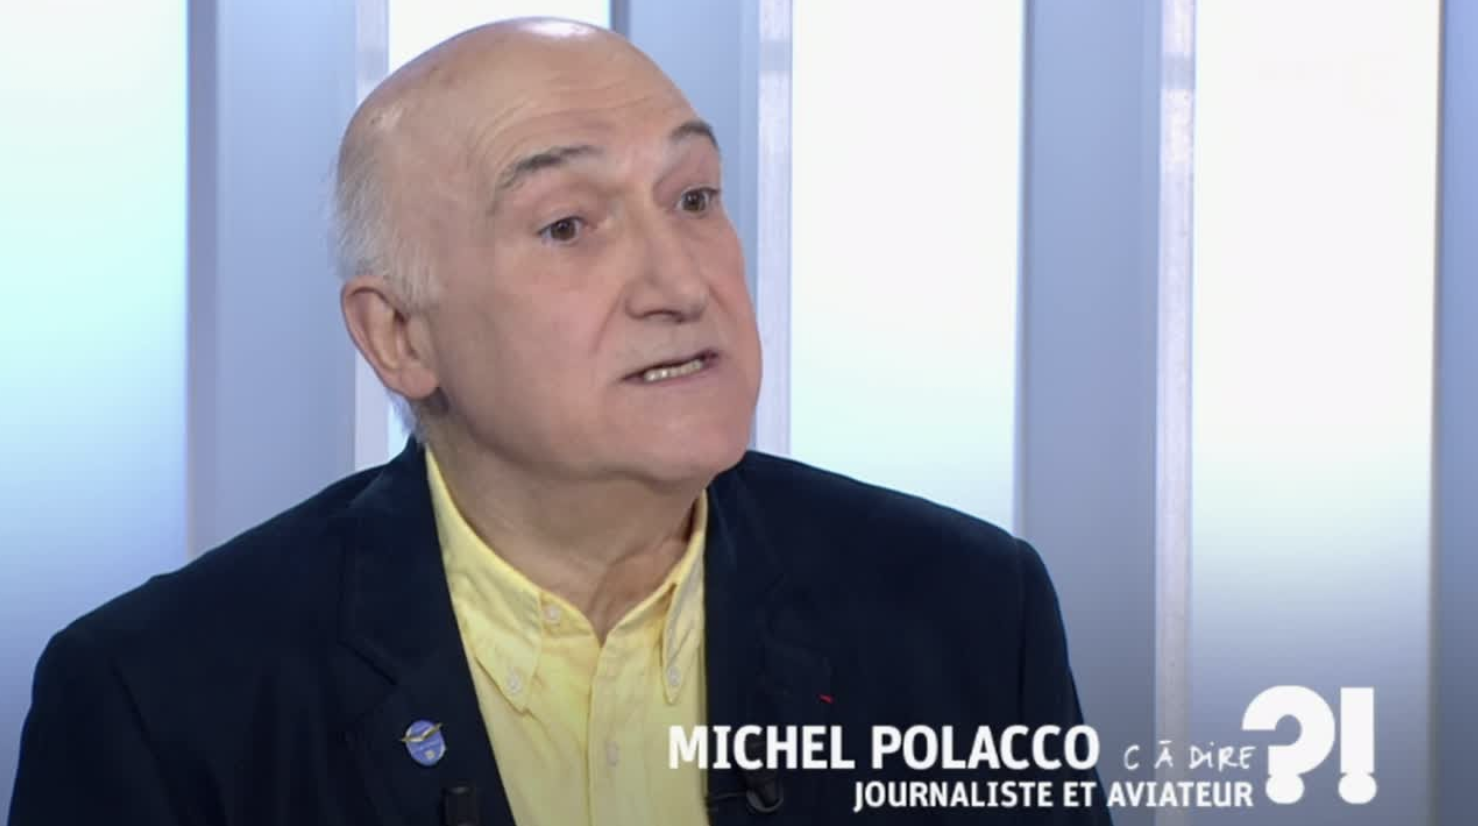 Michel Polacco intervient régulièrement dans les médias en tant que spécialiste de l'aéronautique.